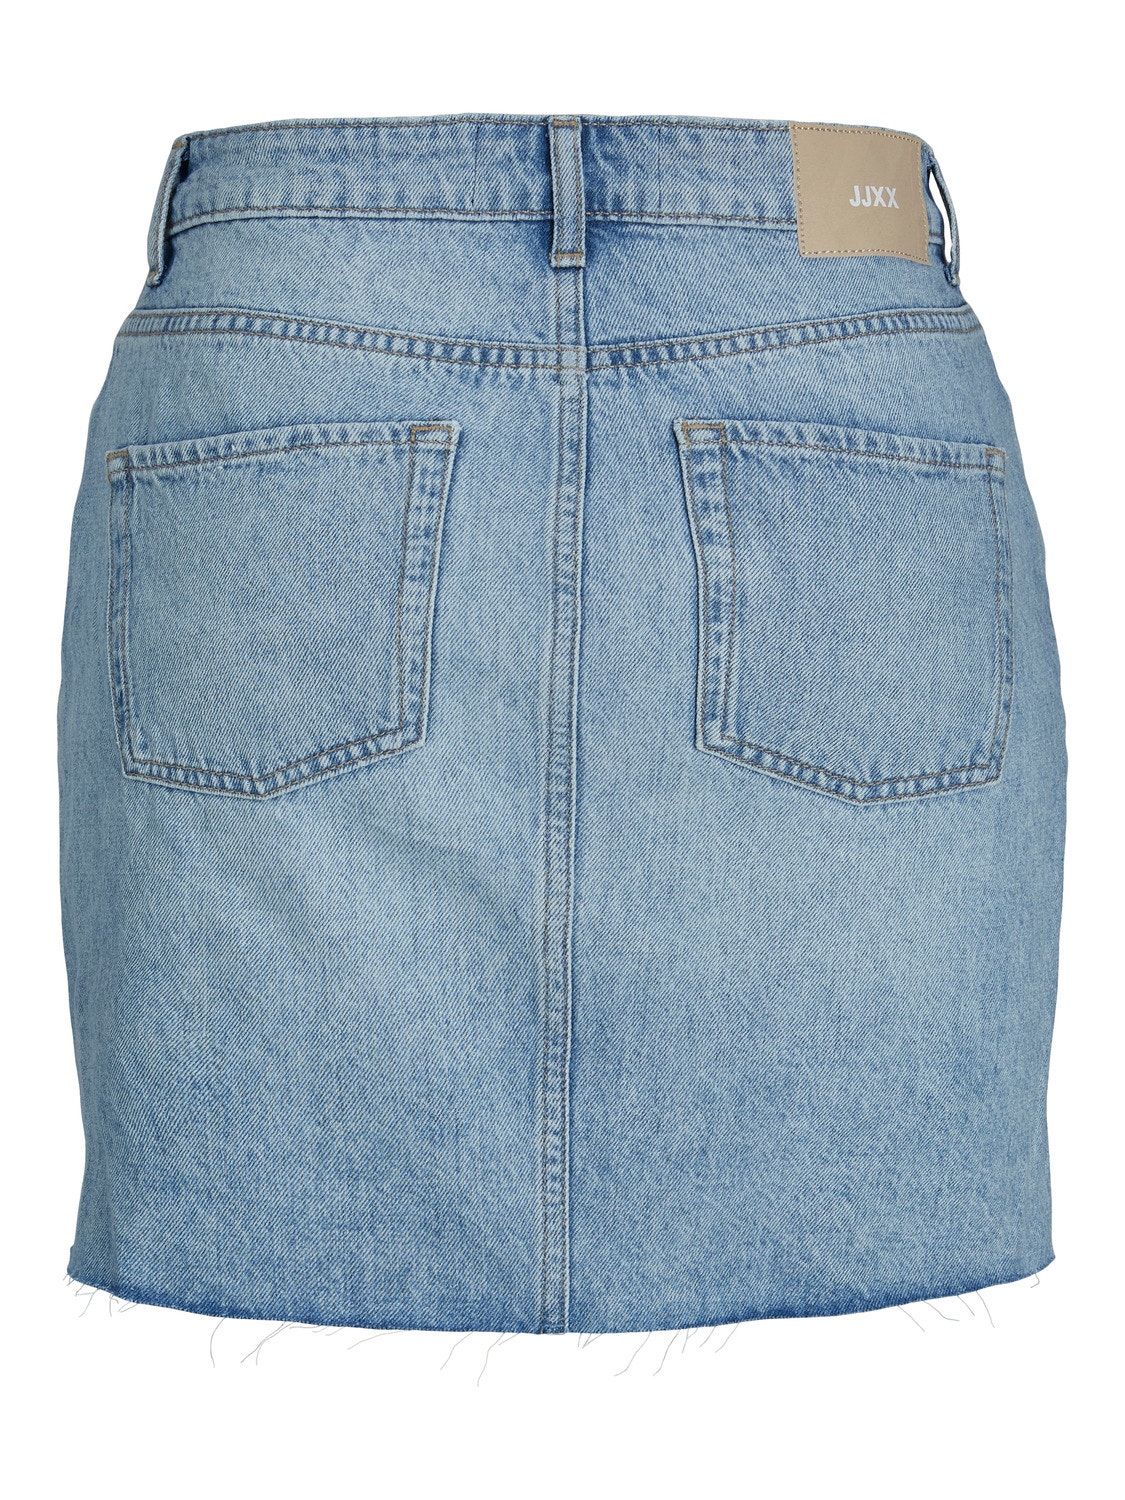 JJXX JXAURA Spódnica jeansowa -Light Blue Denim - 12227846